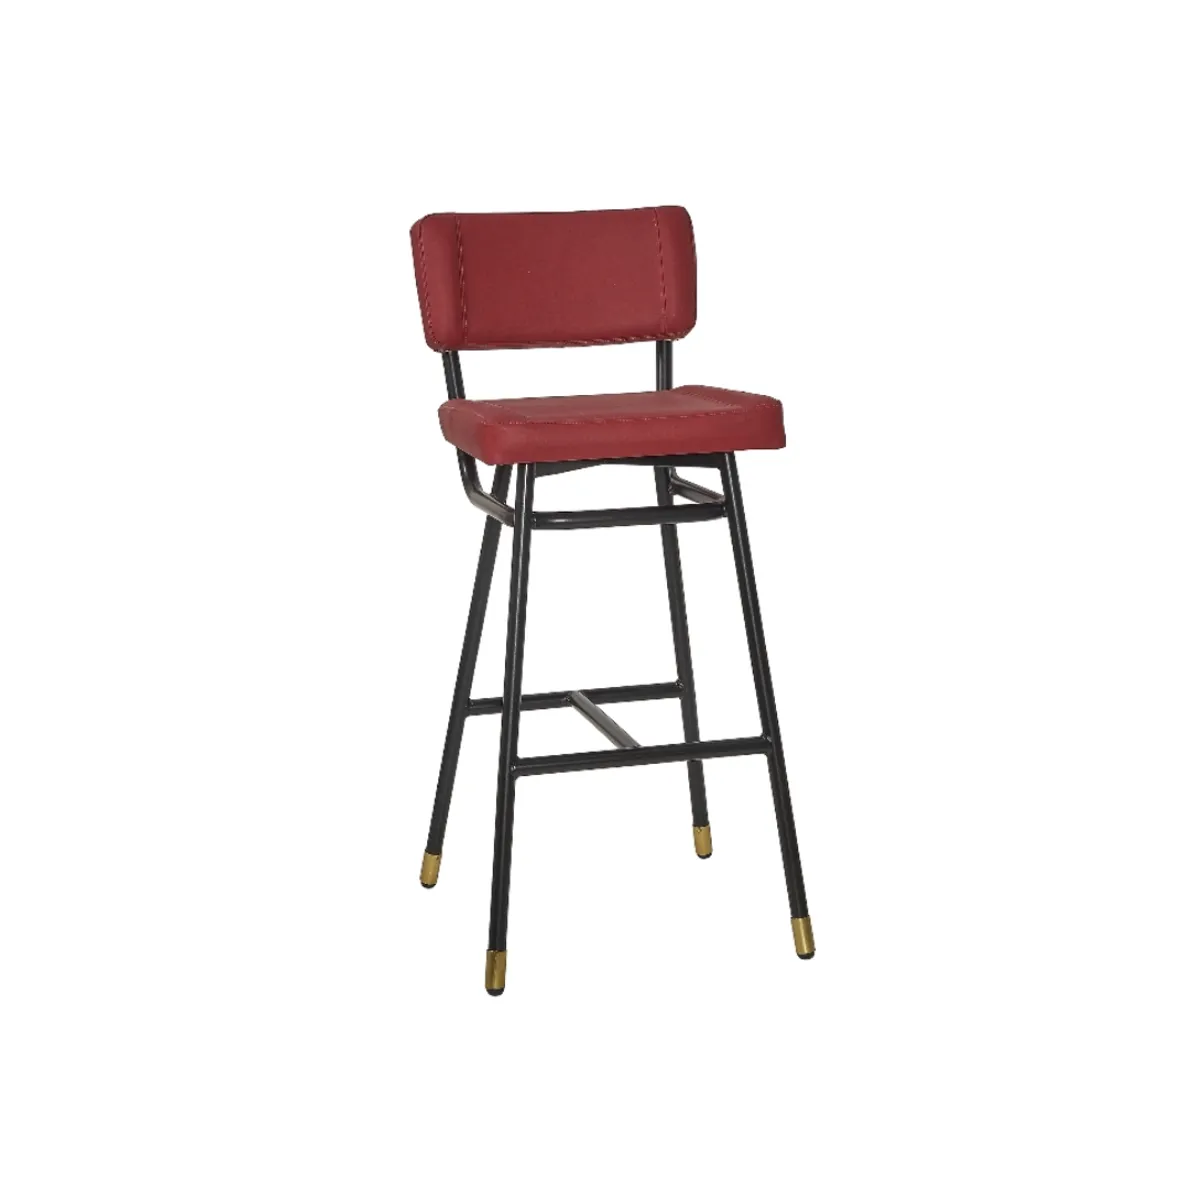 Leana bar stool 3